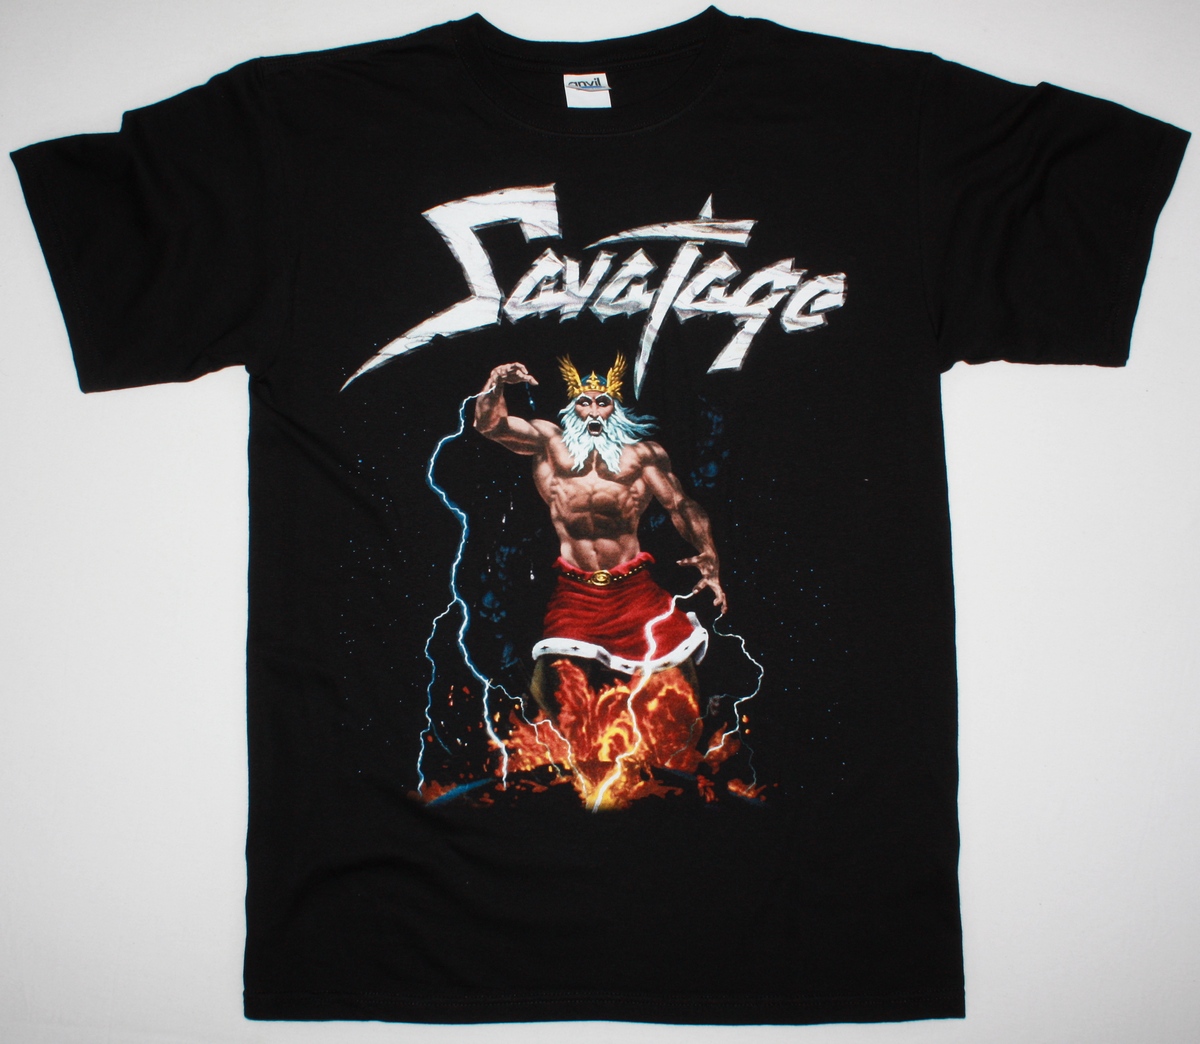 METAL Best BLACK DEVASTATION SHIRT HEAVY JON PROGRESSIVE NEW OLIVA T- TOTAL SAVATAGE - T-shirts Rock